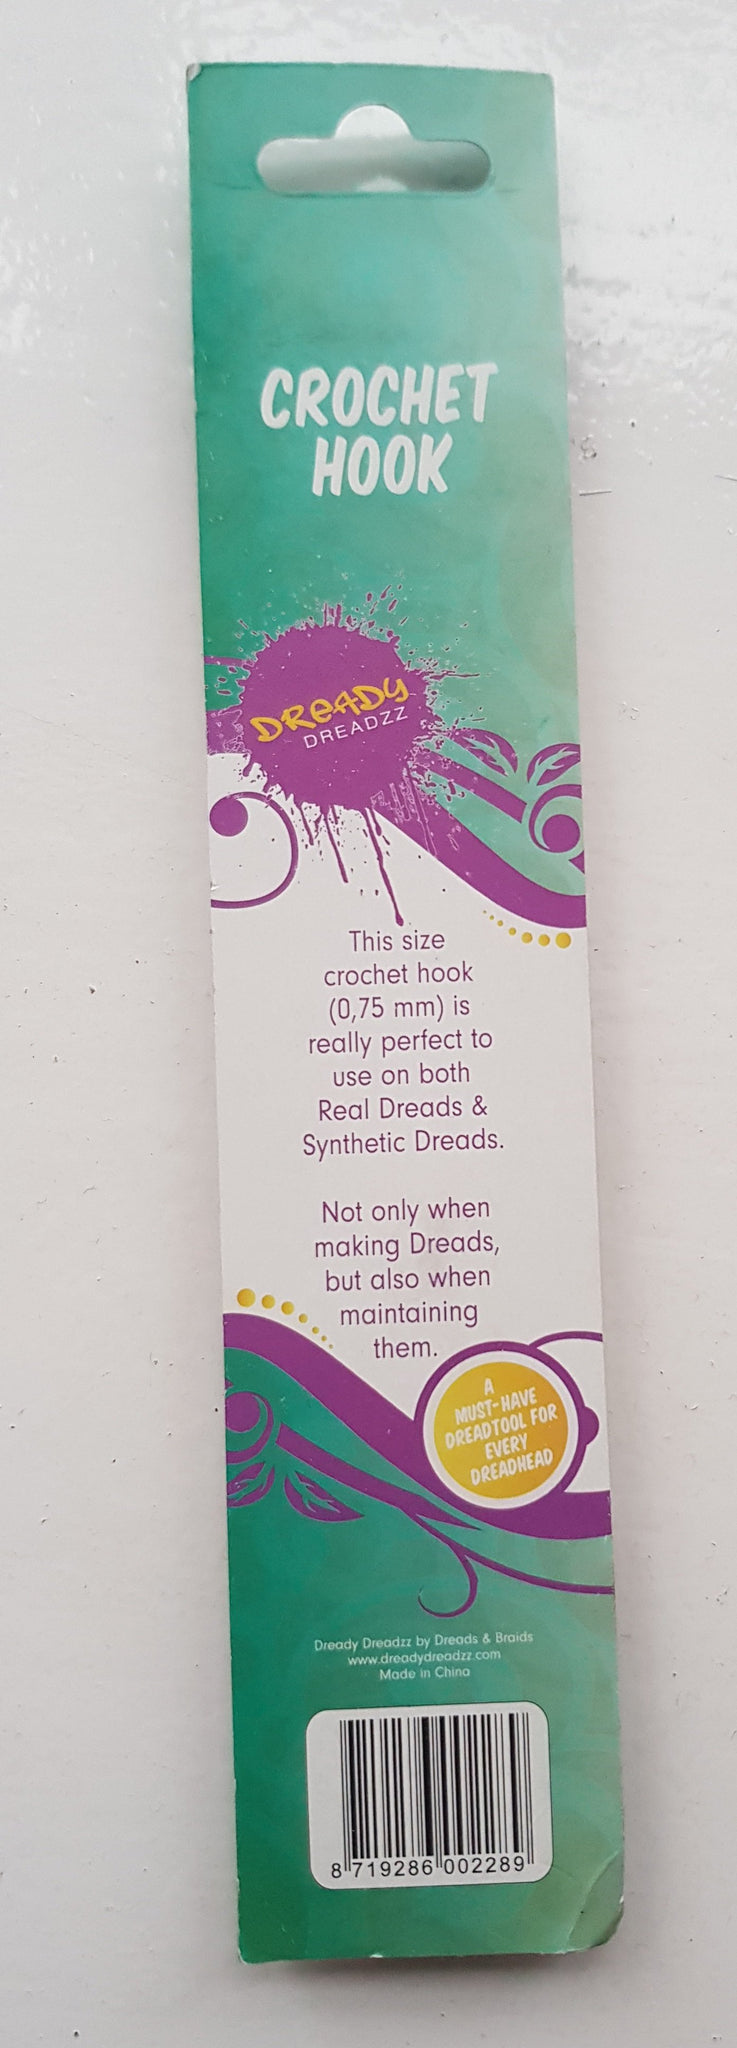 Dready Dreadzz - Dreadlocks Crochet Hook 0.75mm (Loses Haarfixierungswerkzeug)